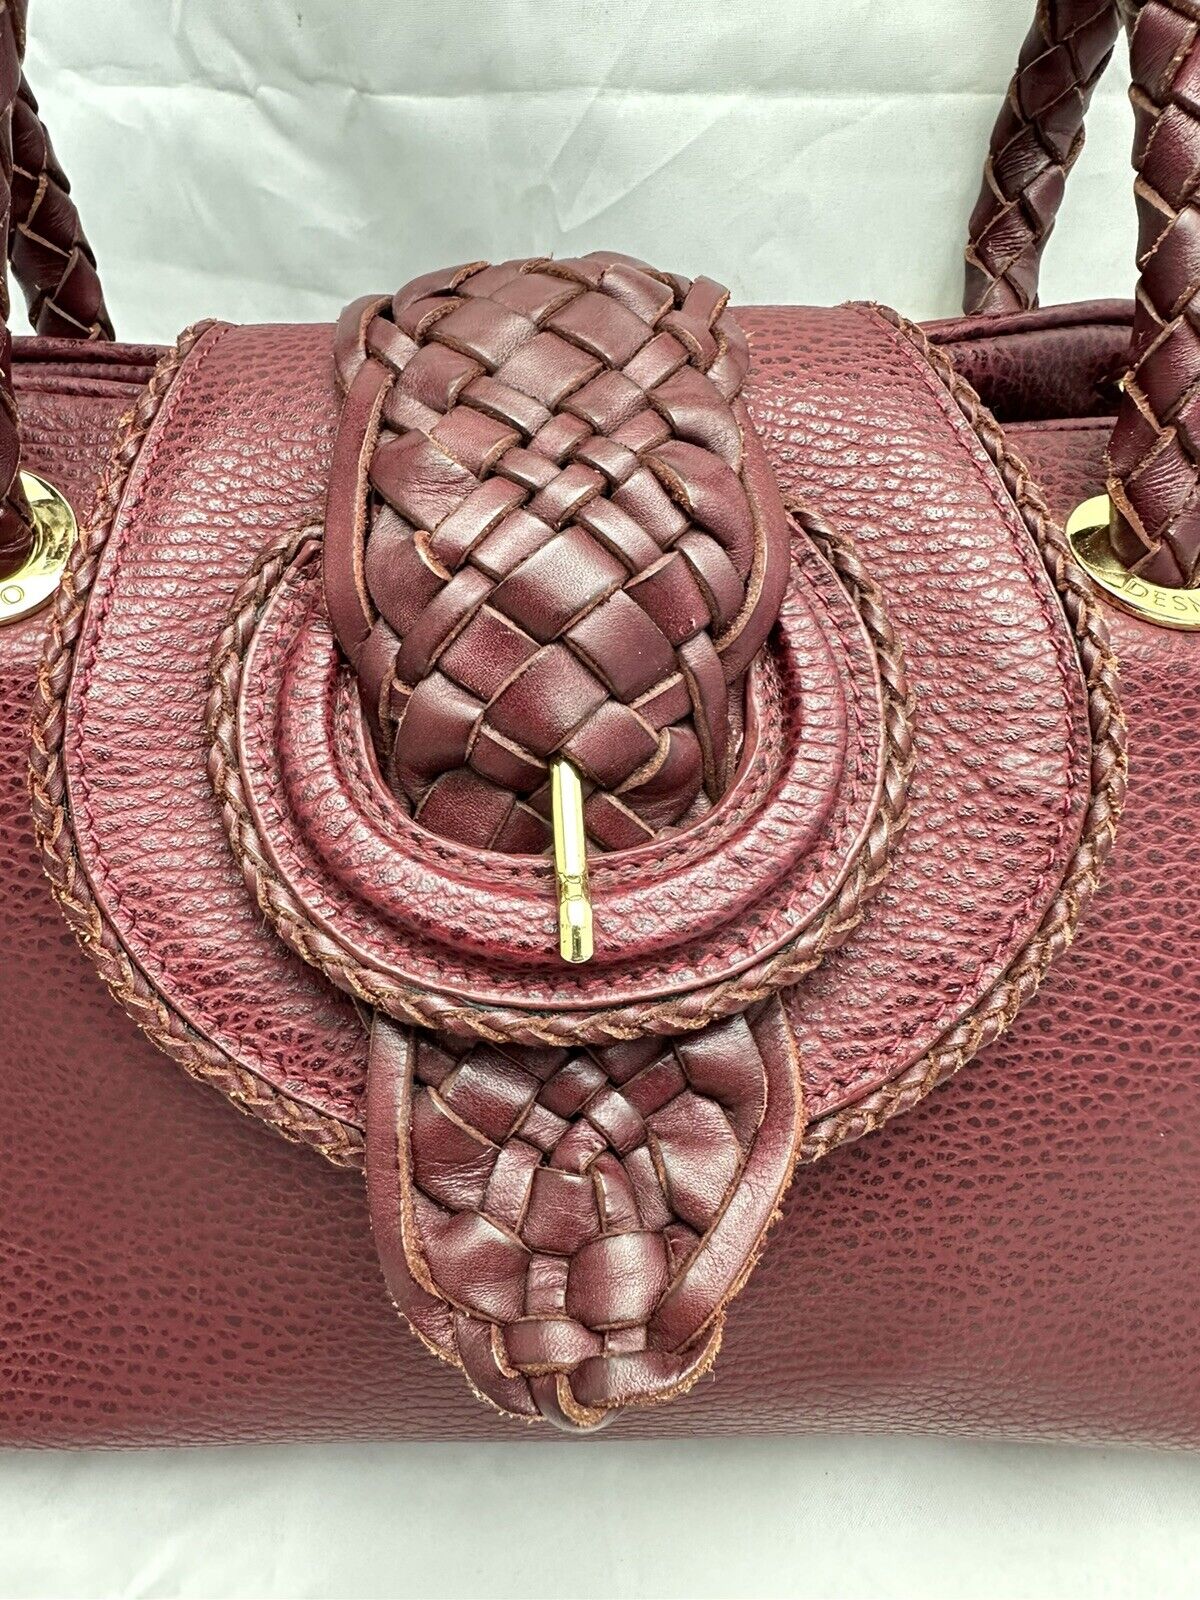 Desmo Burgundy Leather Handbag - image 5